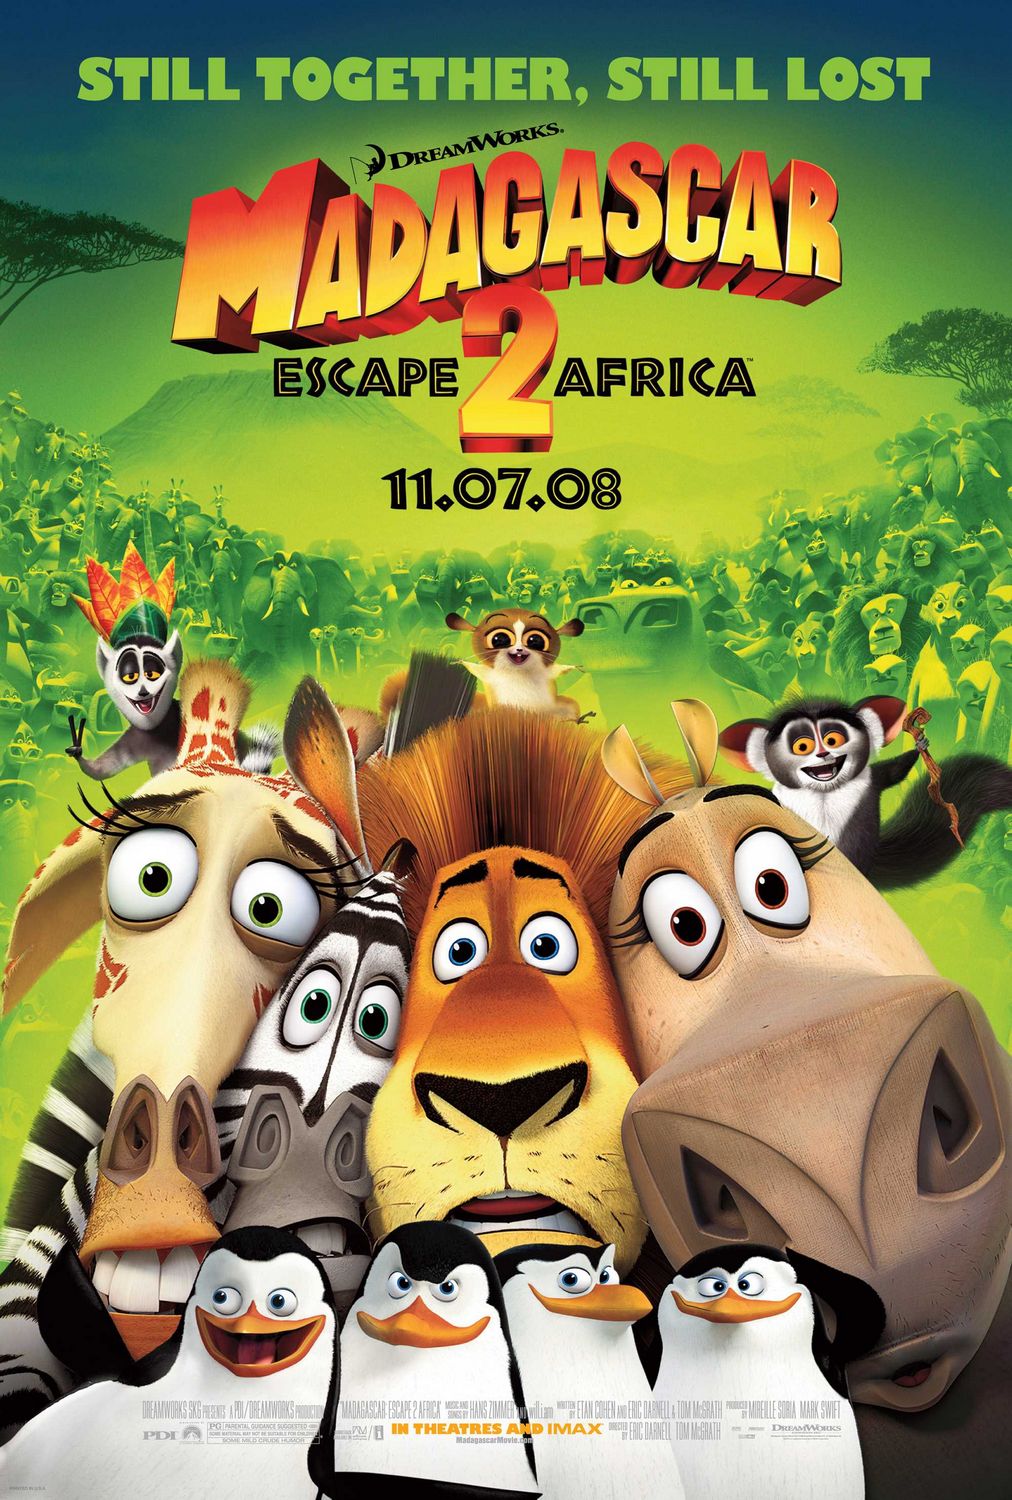 Постер - Мадагаскар 2: 1012x1500 / 325 Кб